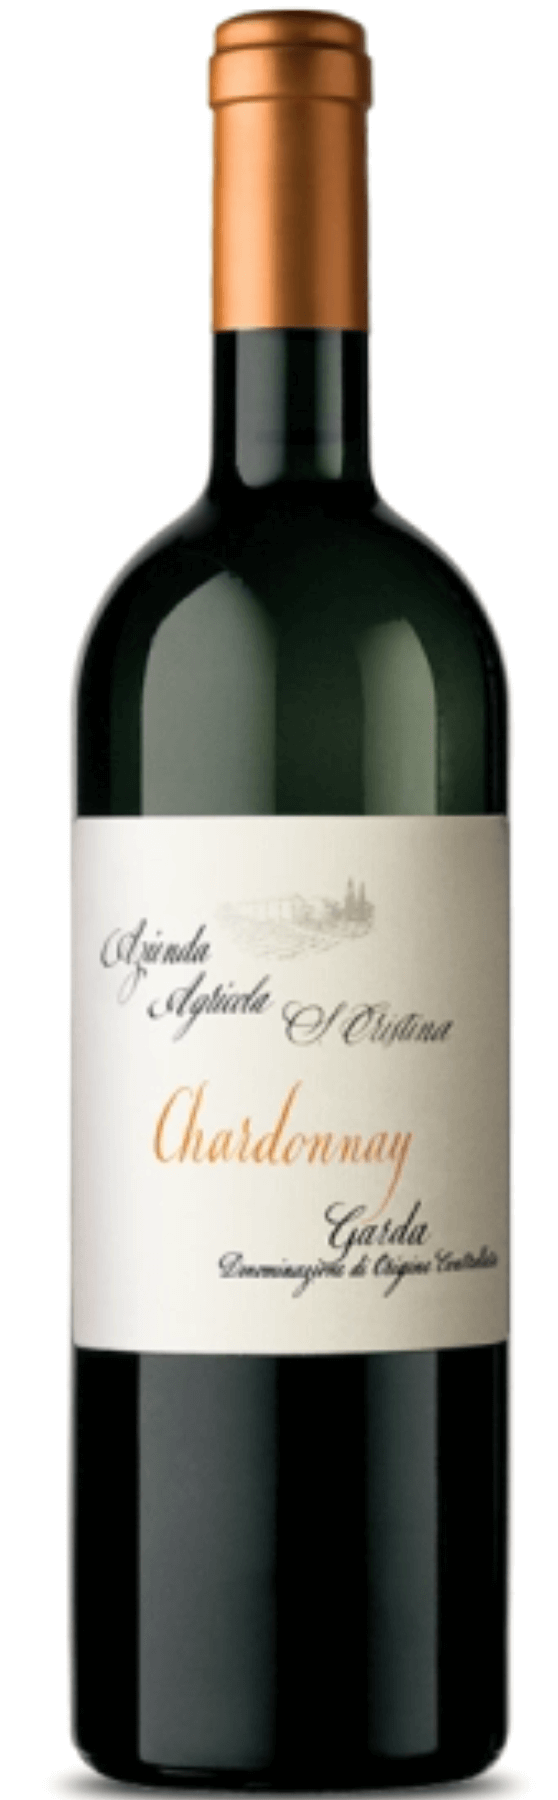 Santa Cristina Chardonnay Garda | 2021 | trocken | Weißwein | Vinoscout